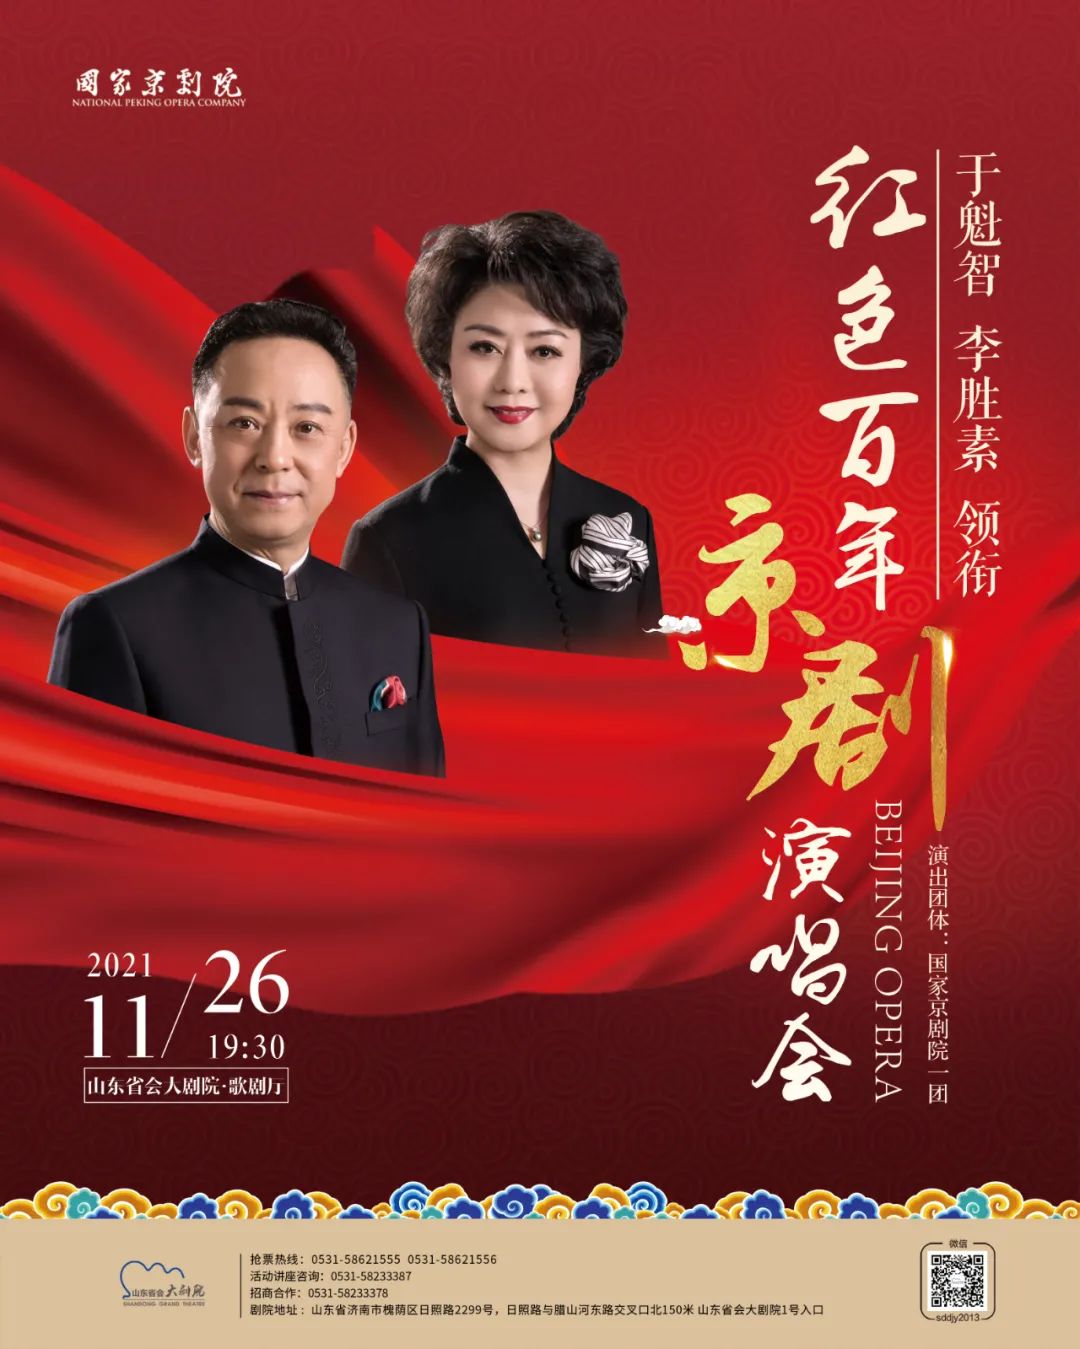 著名京剧表演艺术家于魁智、李胜素领衔，《红色百年京剧演唱会》将于11月26日唱响山东省会大剧院